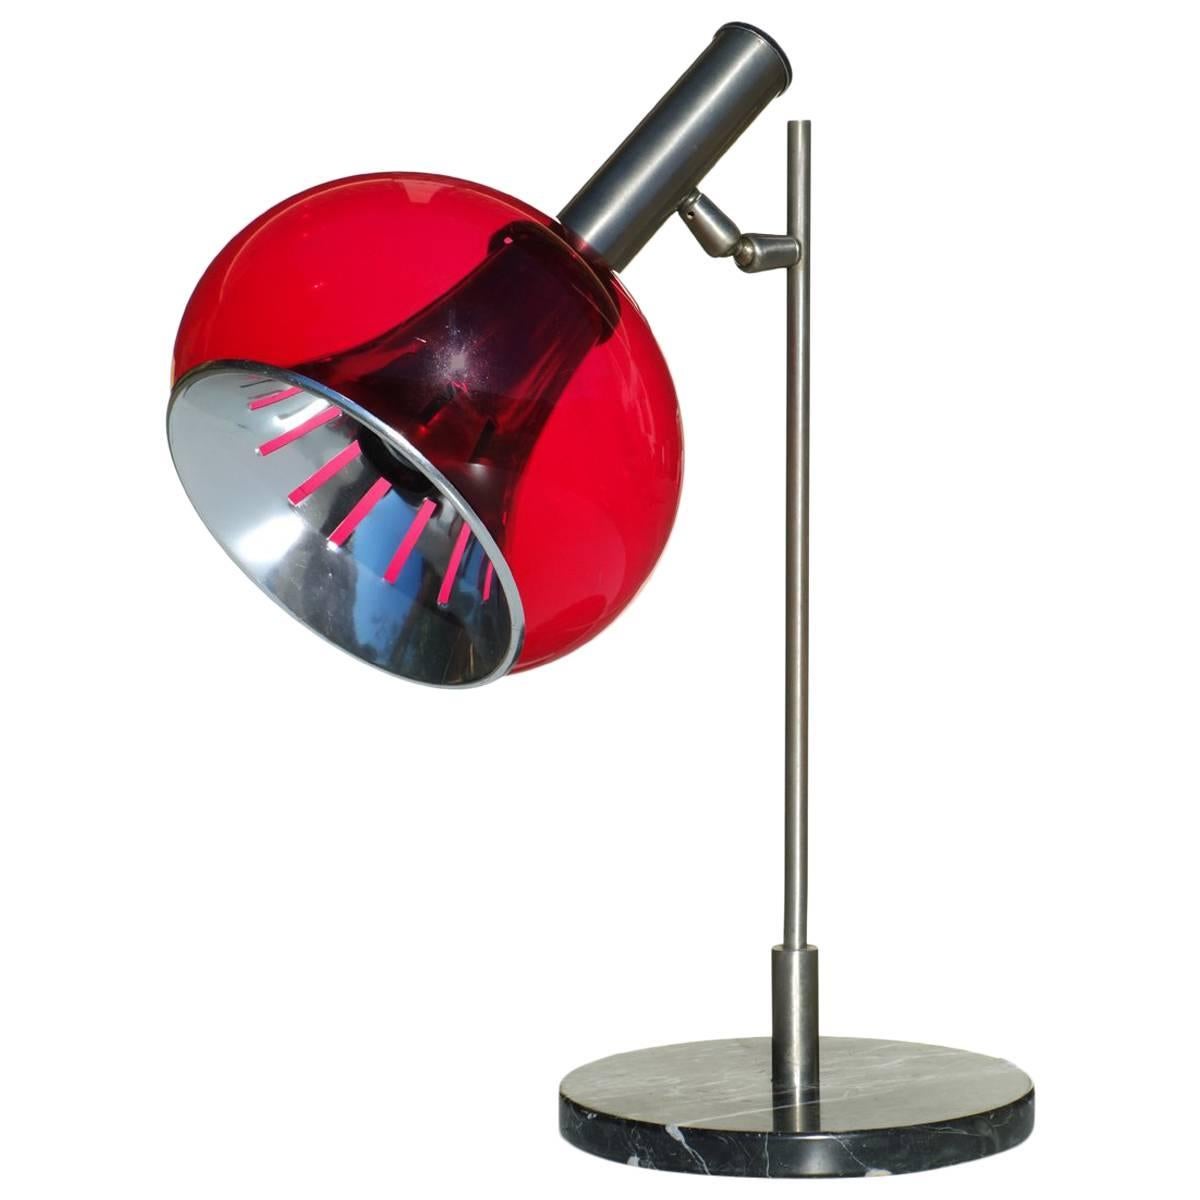 Lampe de bureau Lamter de conception italienne mi-siècle moderne, Italie, années 1950, en marbre noir et perspex rouge